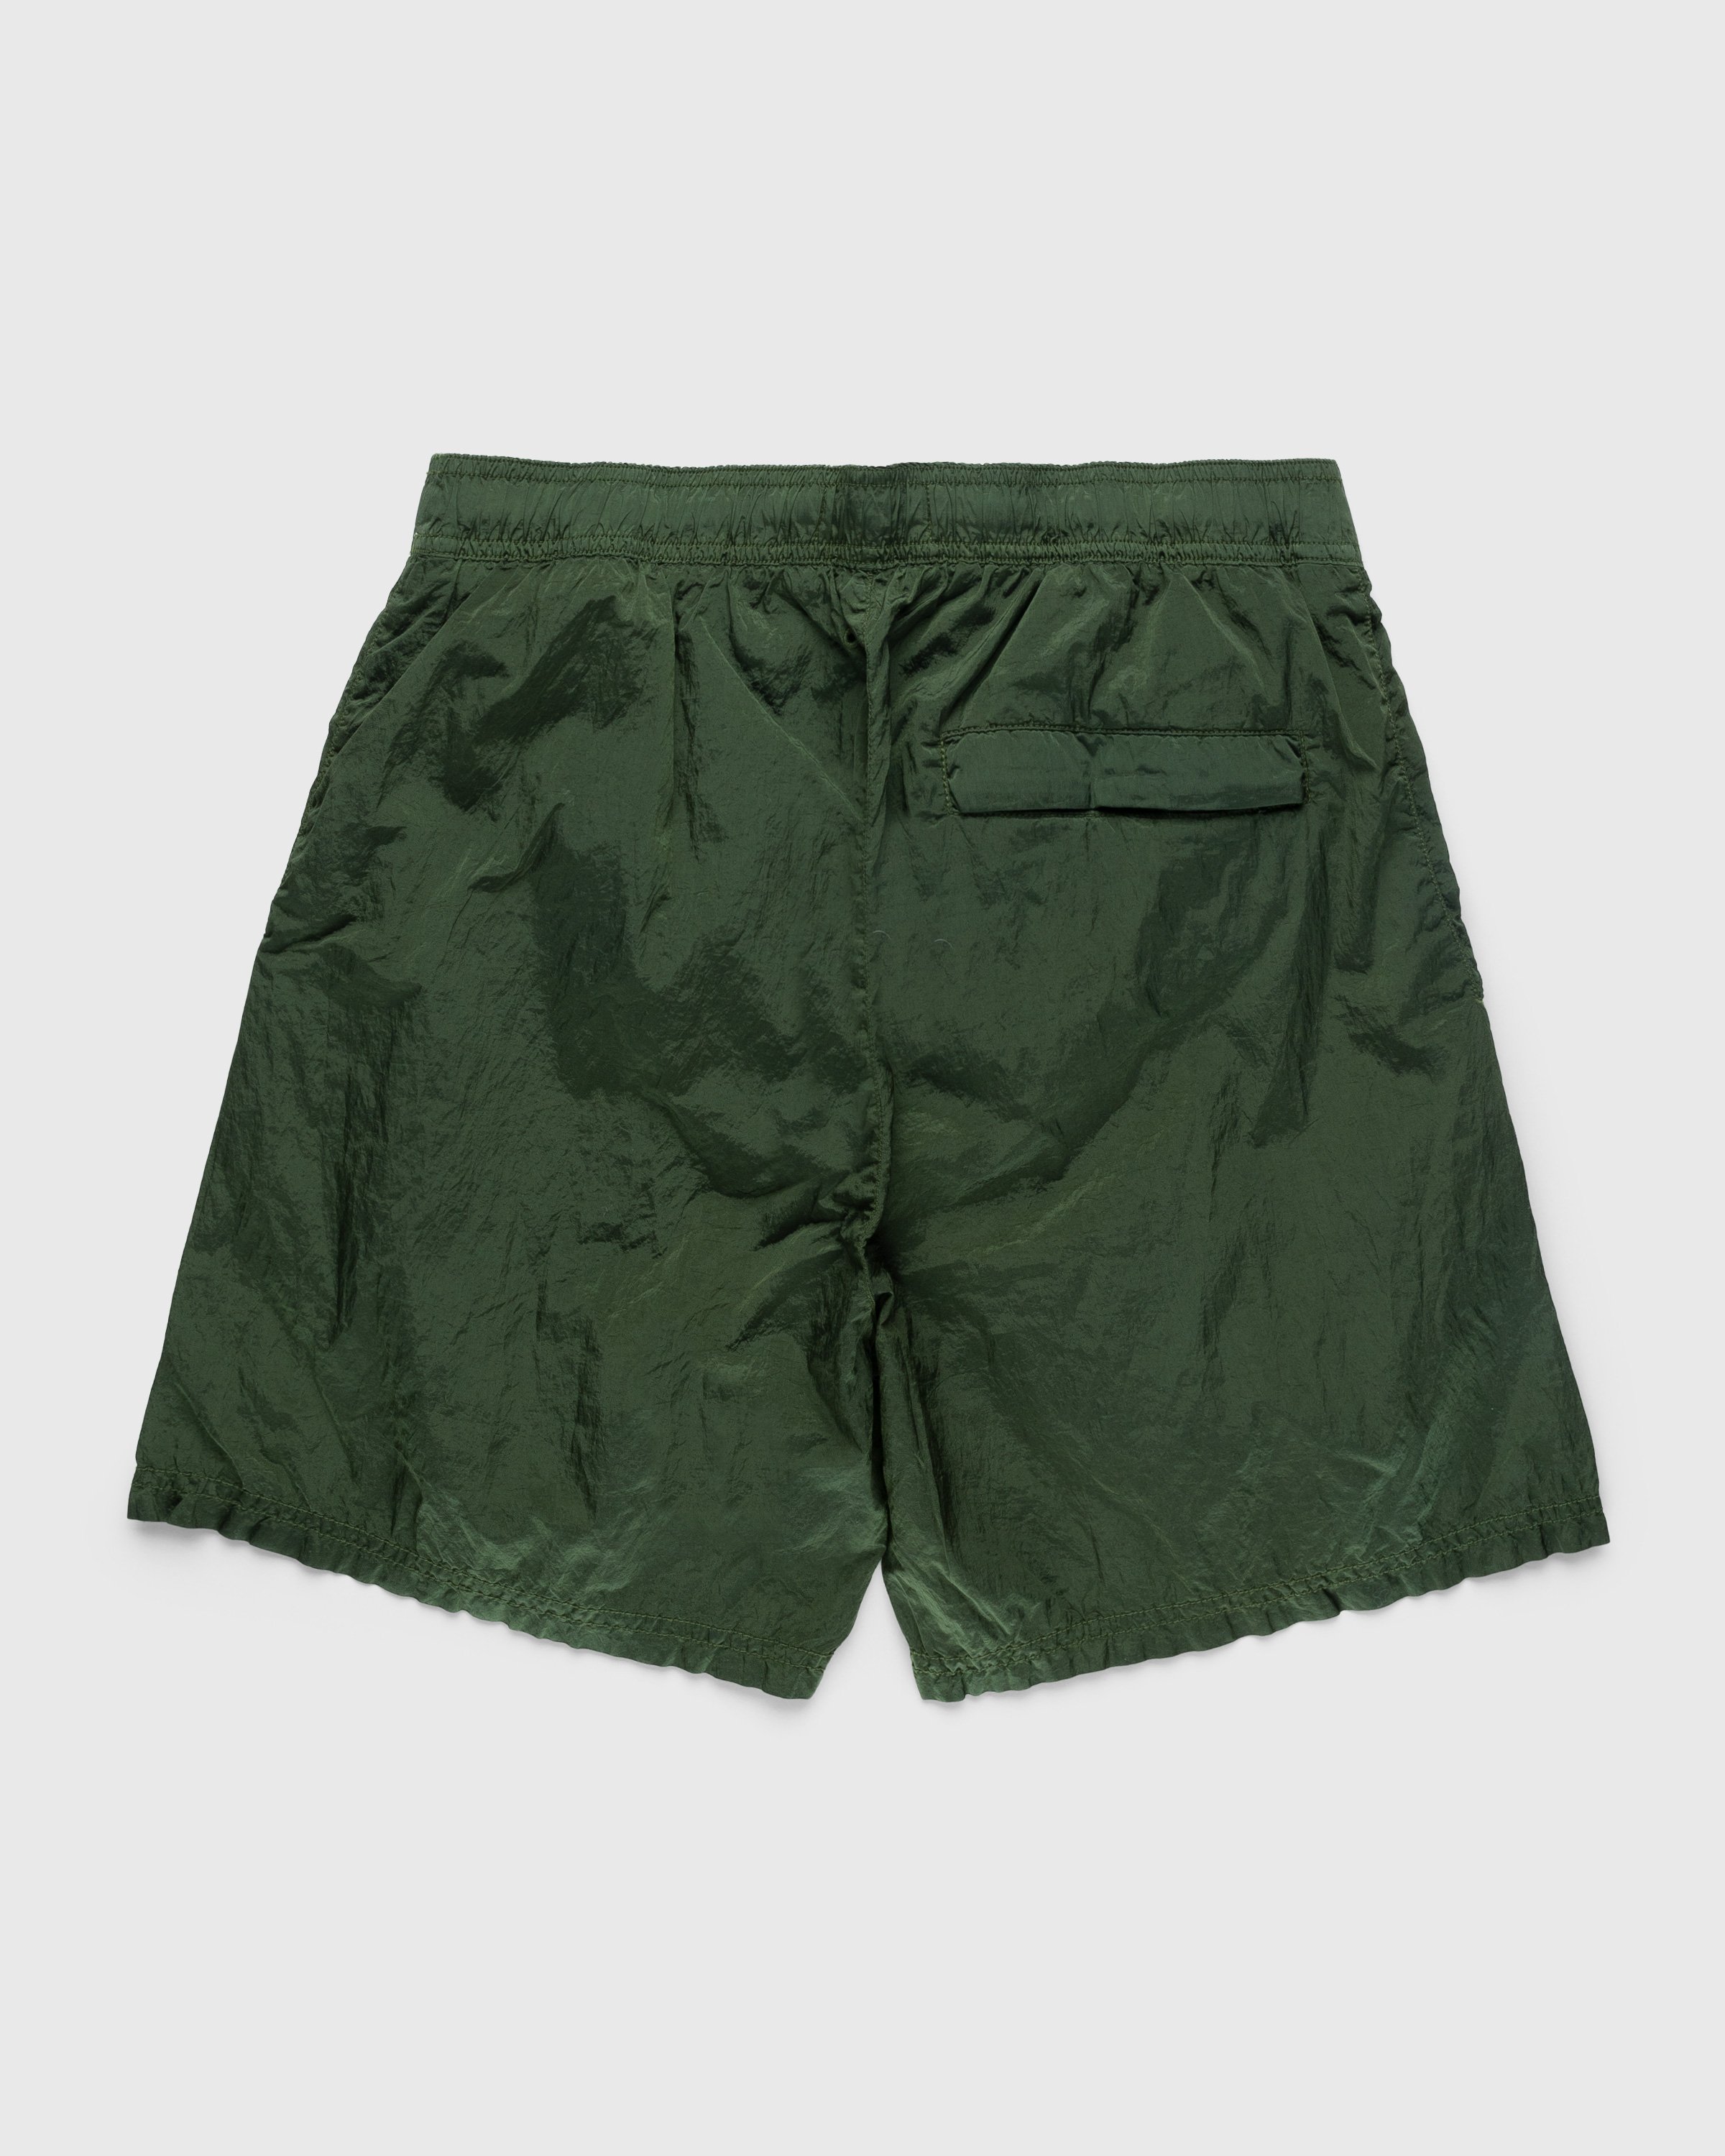 Stone Island - Nylon Metal Swim Shorts Olive - Clothing - Green - Image 2